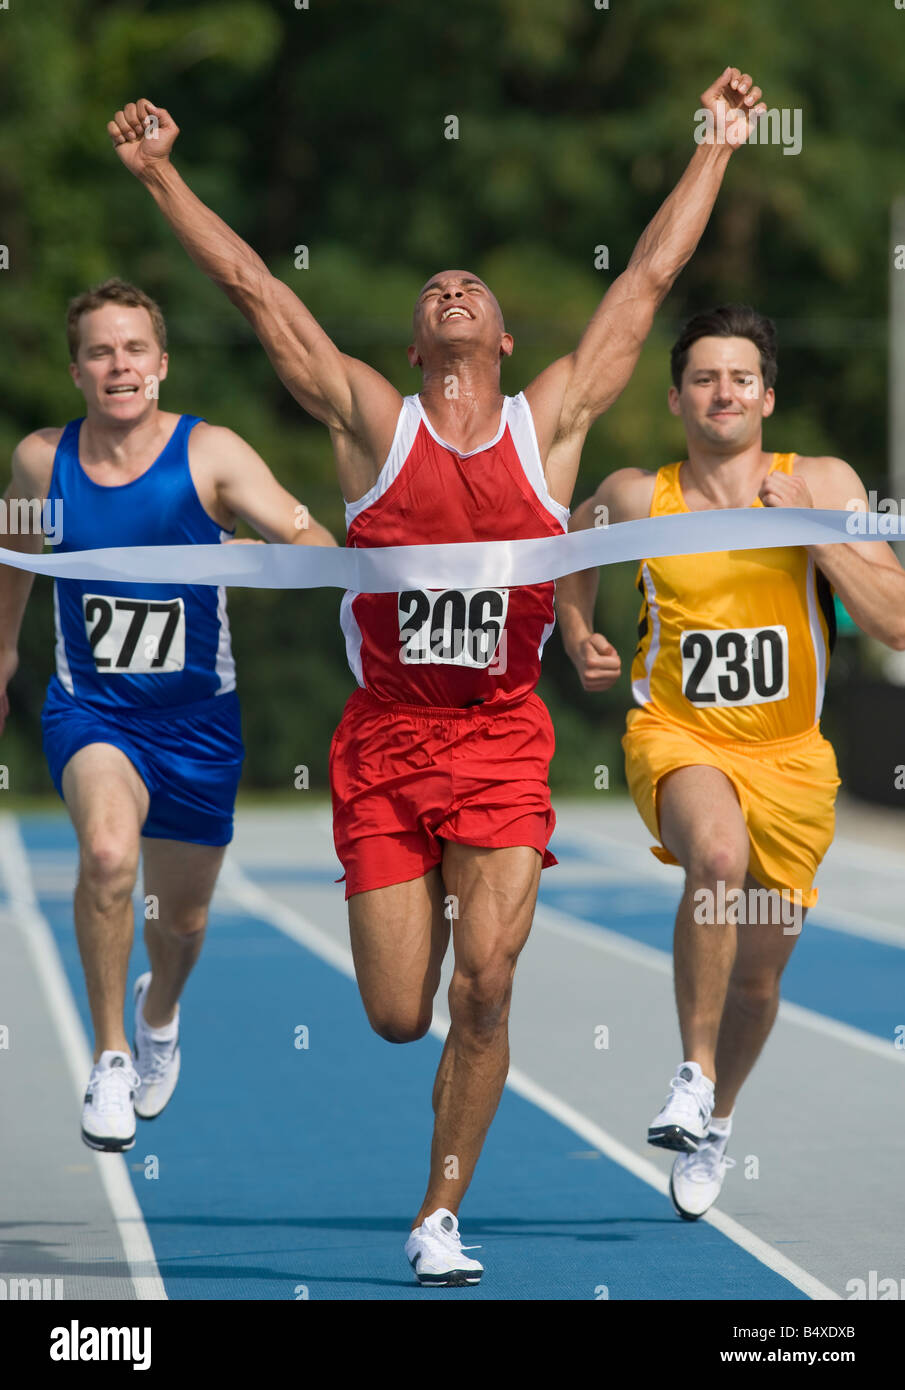 Runner breaking through finish line Stock Photo - Alamy